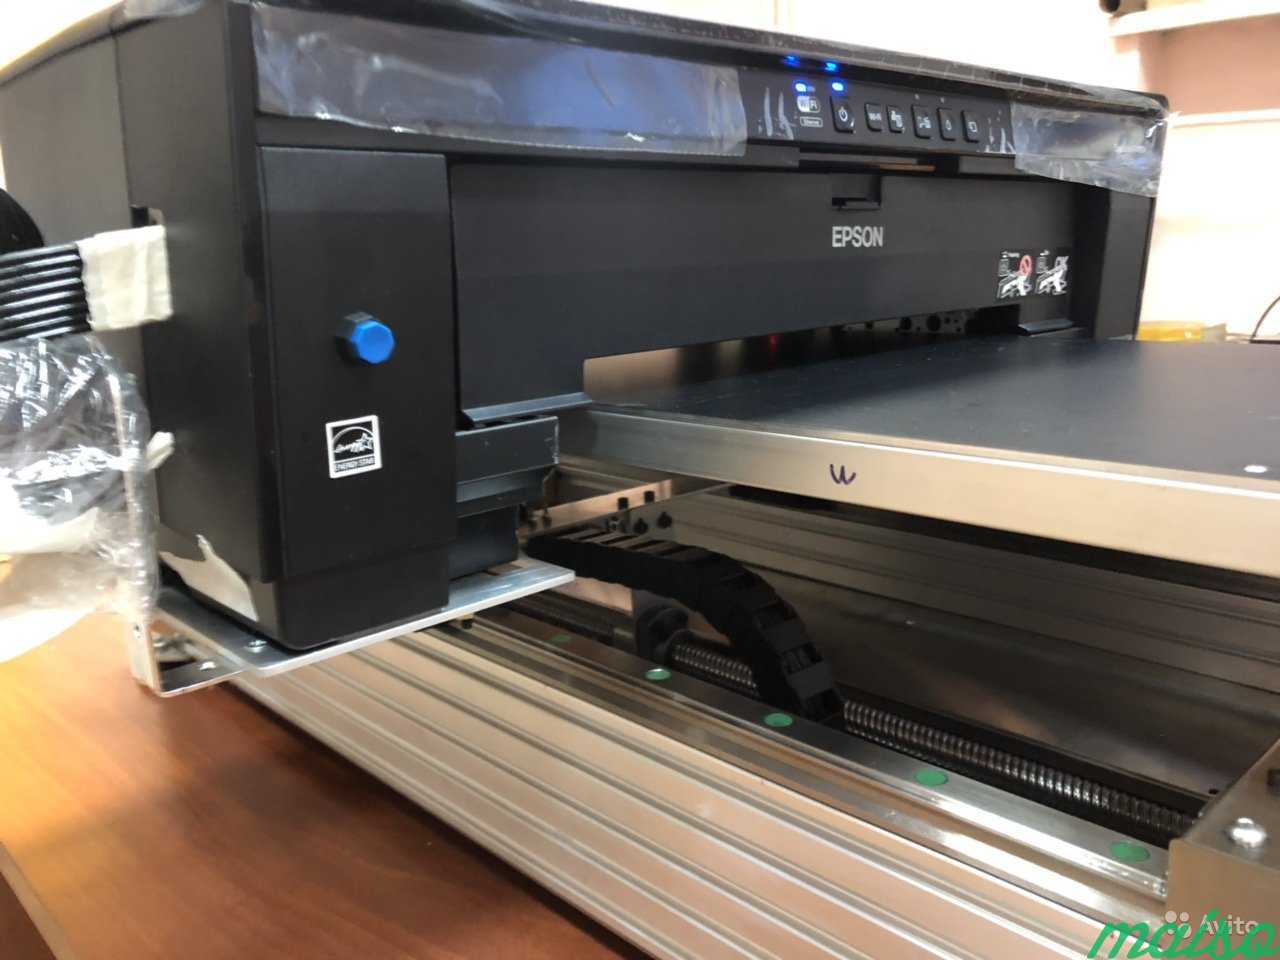 Сравниваем технологии печати: струйная, лазерная, светодиодная (led), сублимационная, твердочернильная